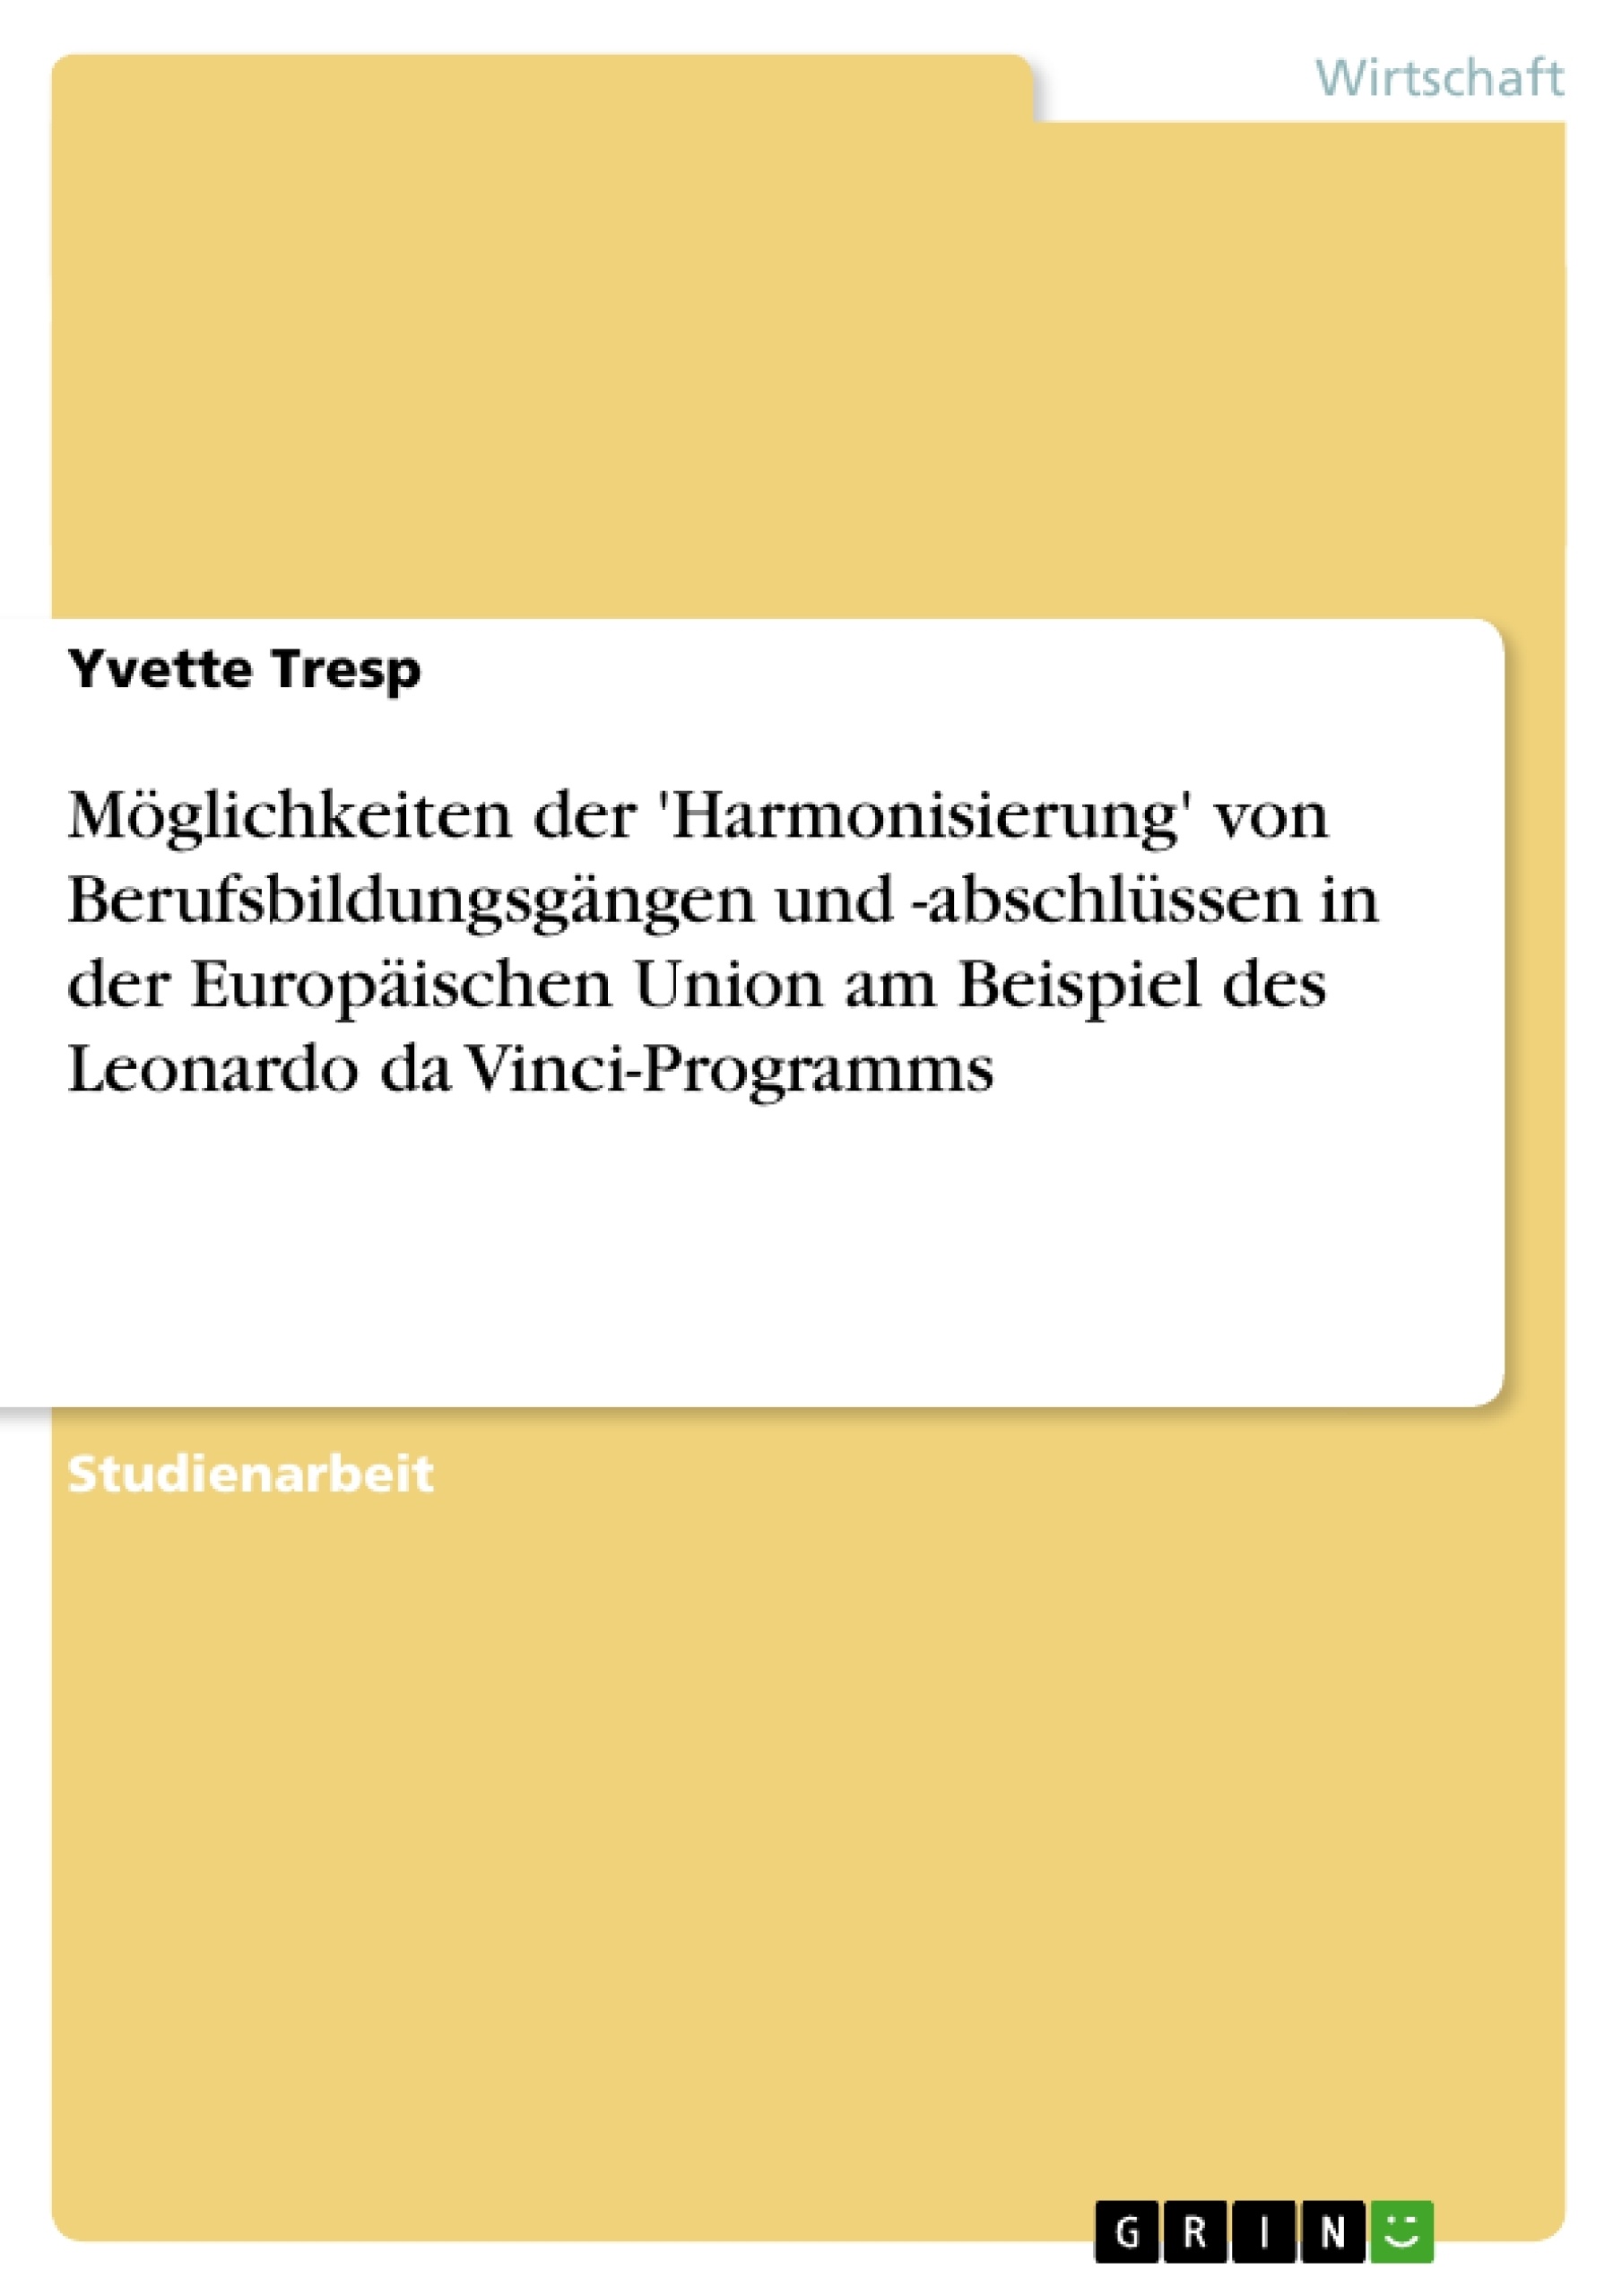 Título: Möglichkeiten der 'Harmonisierung' von Berufsbildungsgängen und -abschlüssen in der Europäischen Union am Beispiel des Leonardo da Vinci-Programms